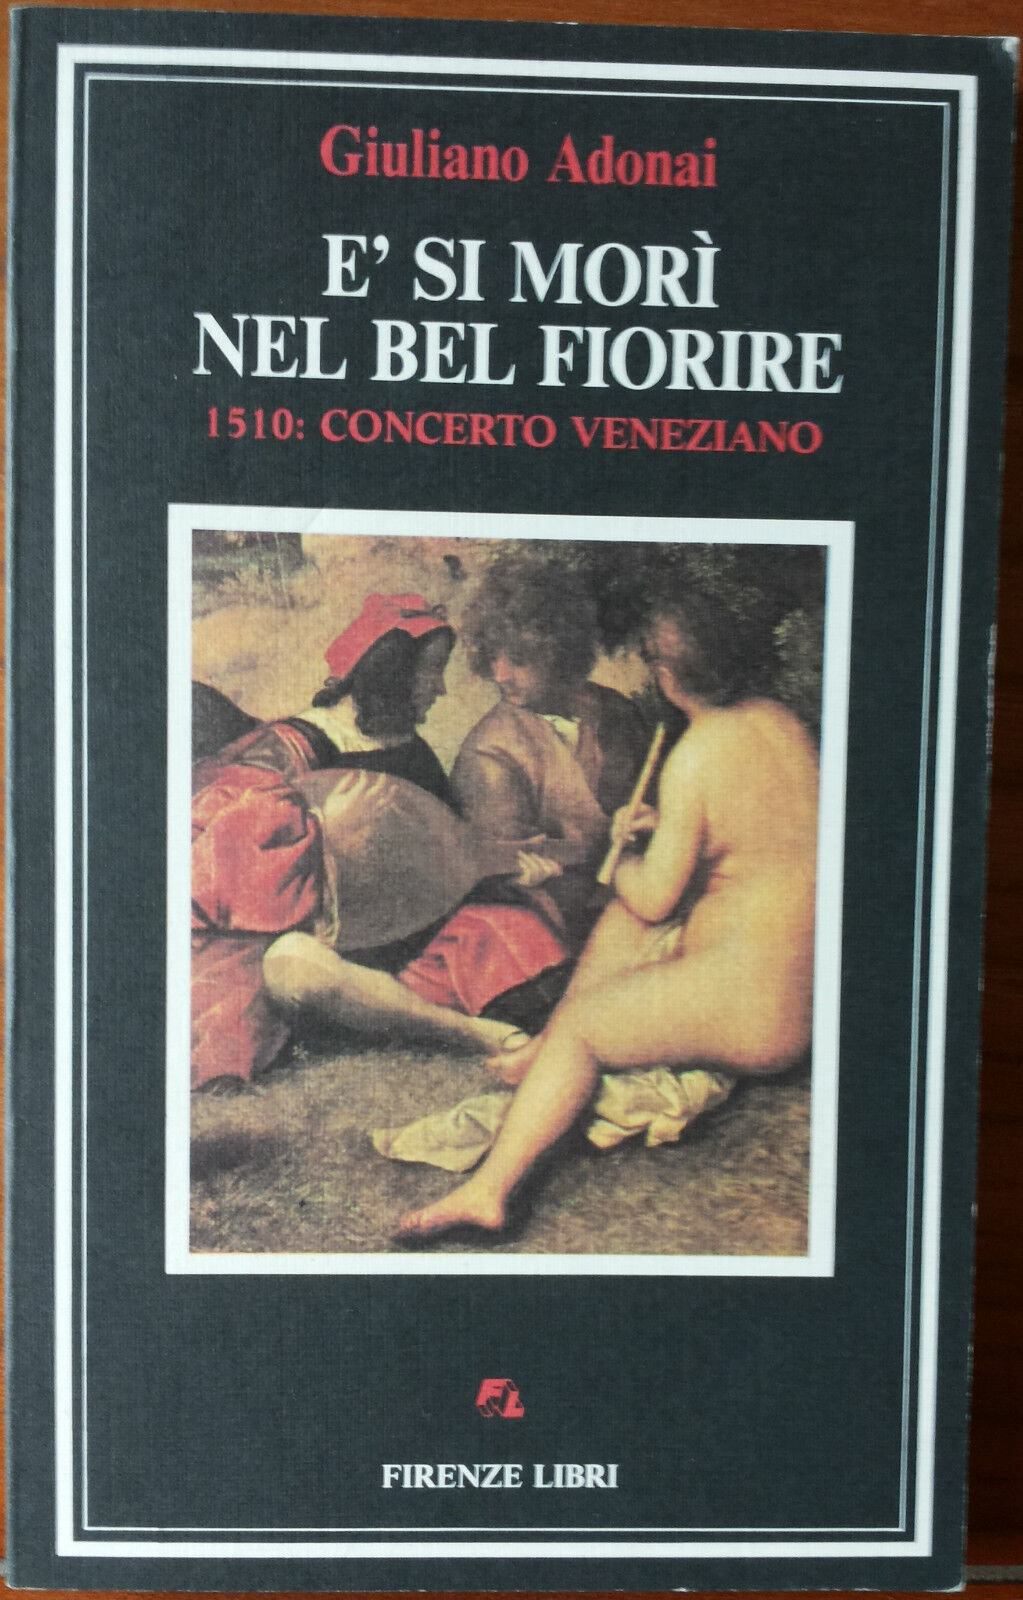 E? si mor? nel bel fiorire - Giuliano Adonai - Firenze Libri,1988 - R